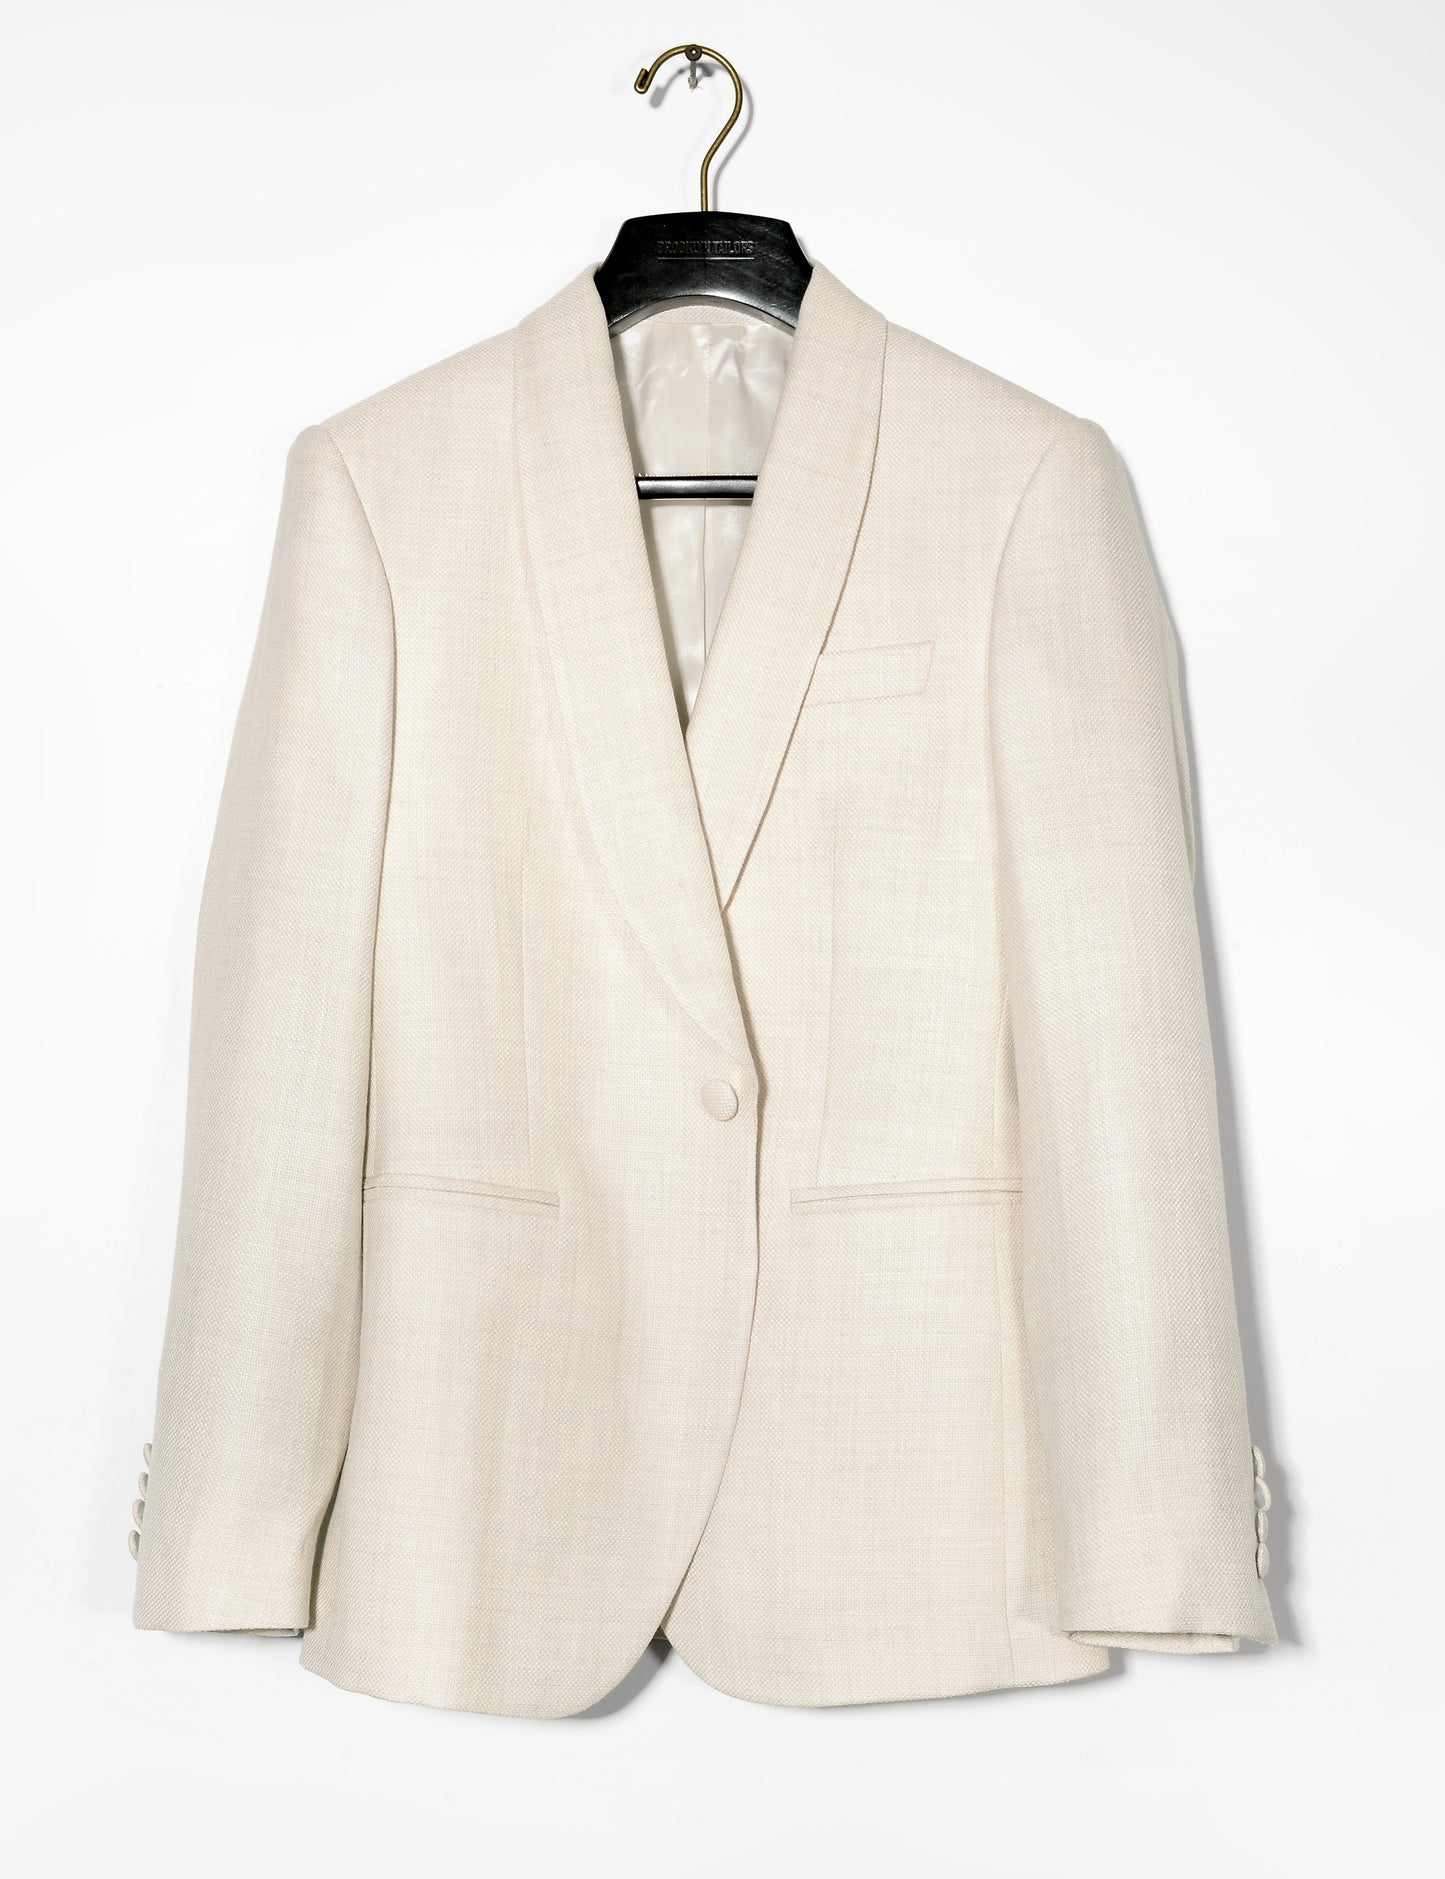 BKT50 Shawl Collar Dinner Jacket in Silk & Wool Textured Weave - Ivory